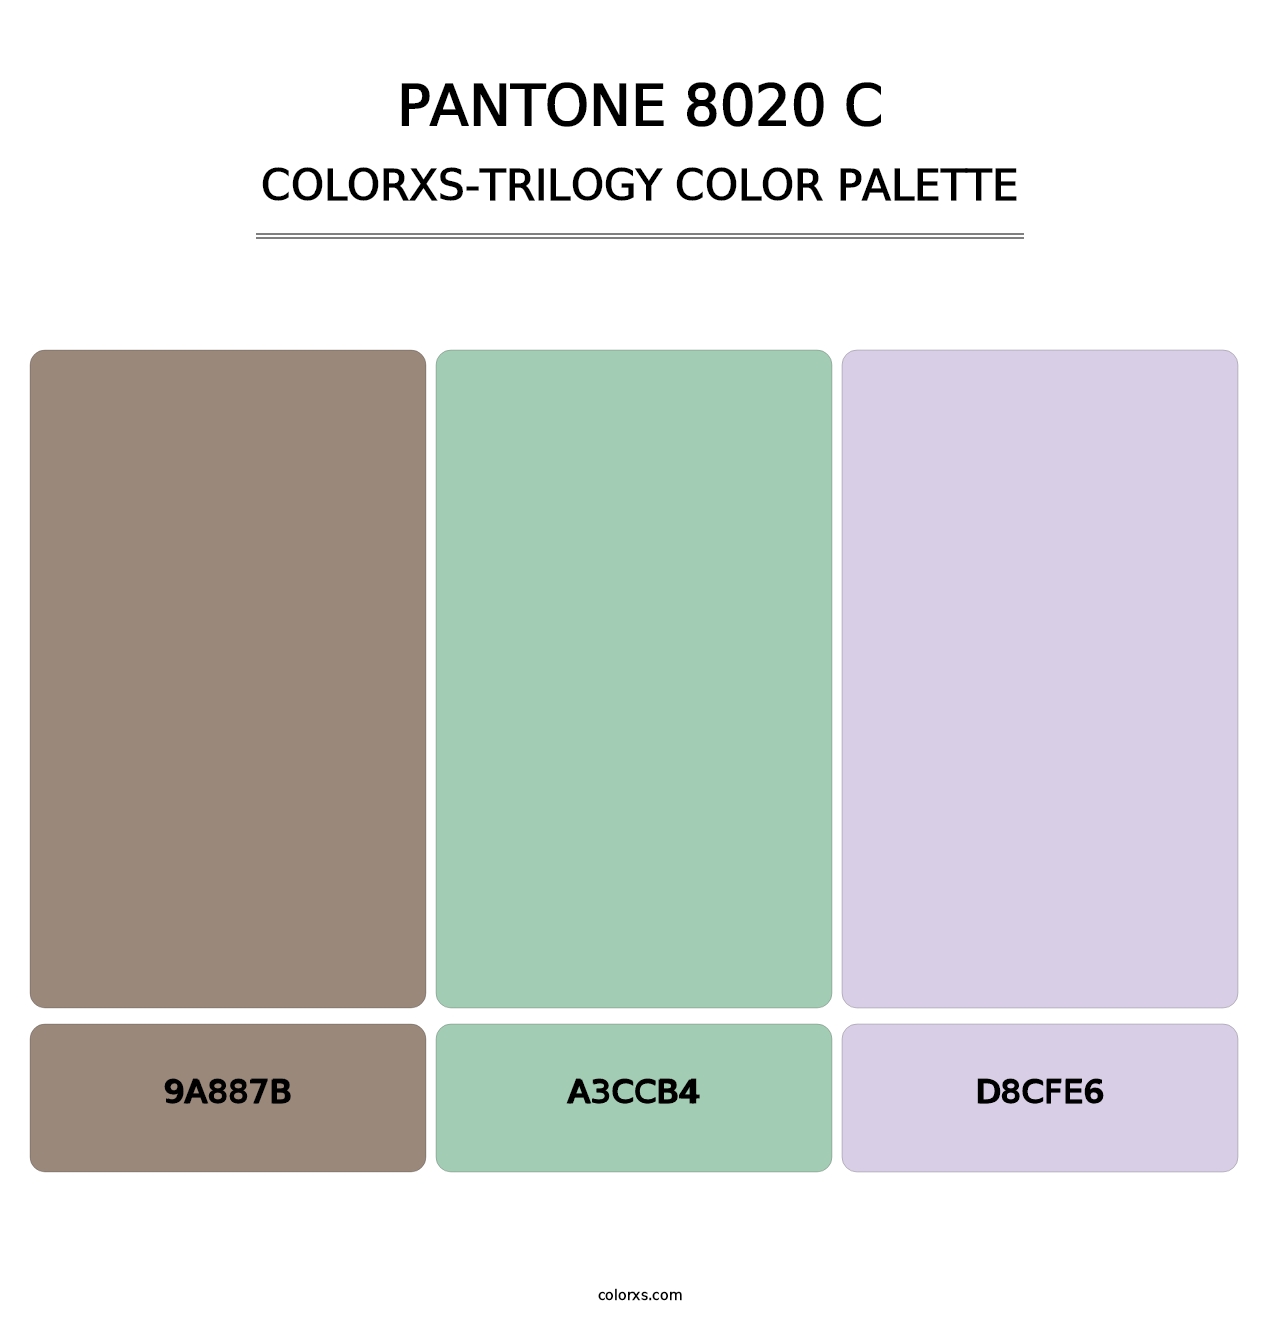 PANTONE 8020 C - Colorxs Trilogy Palette